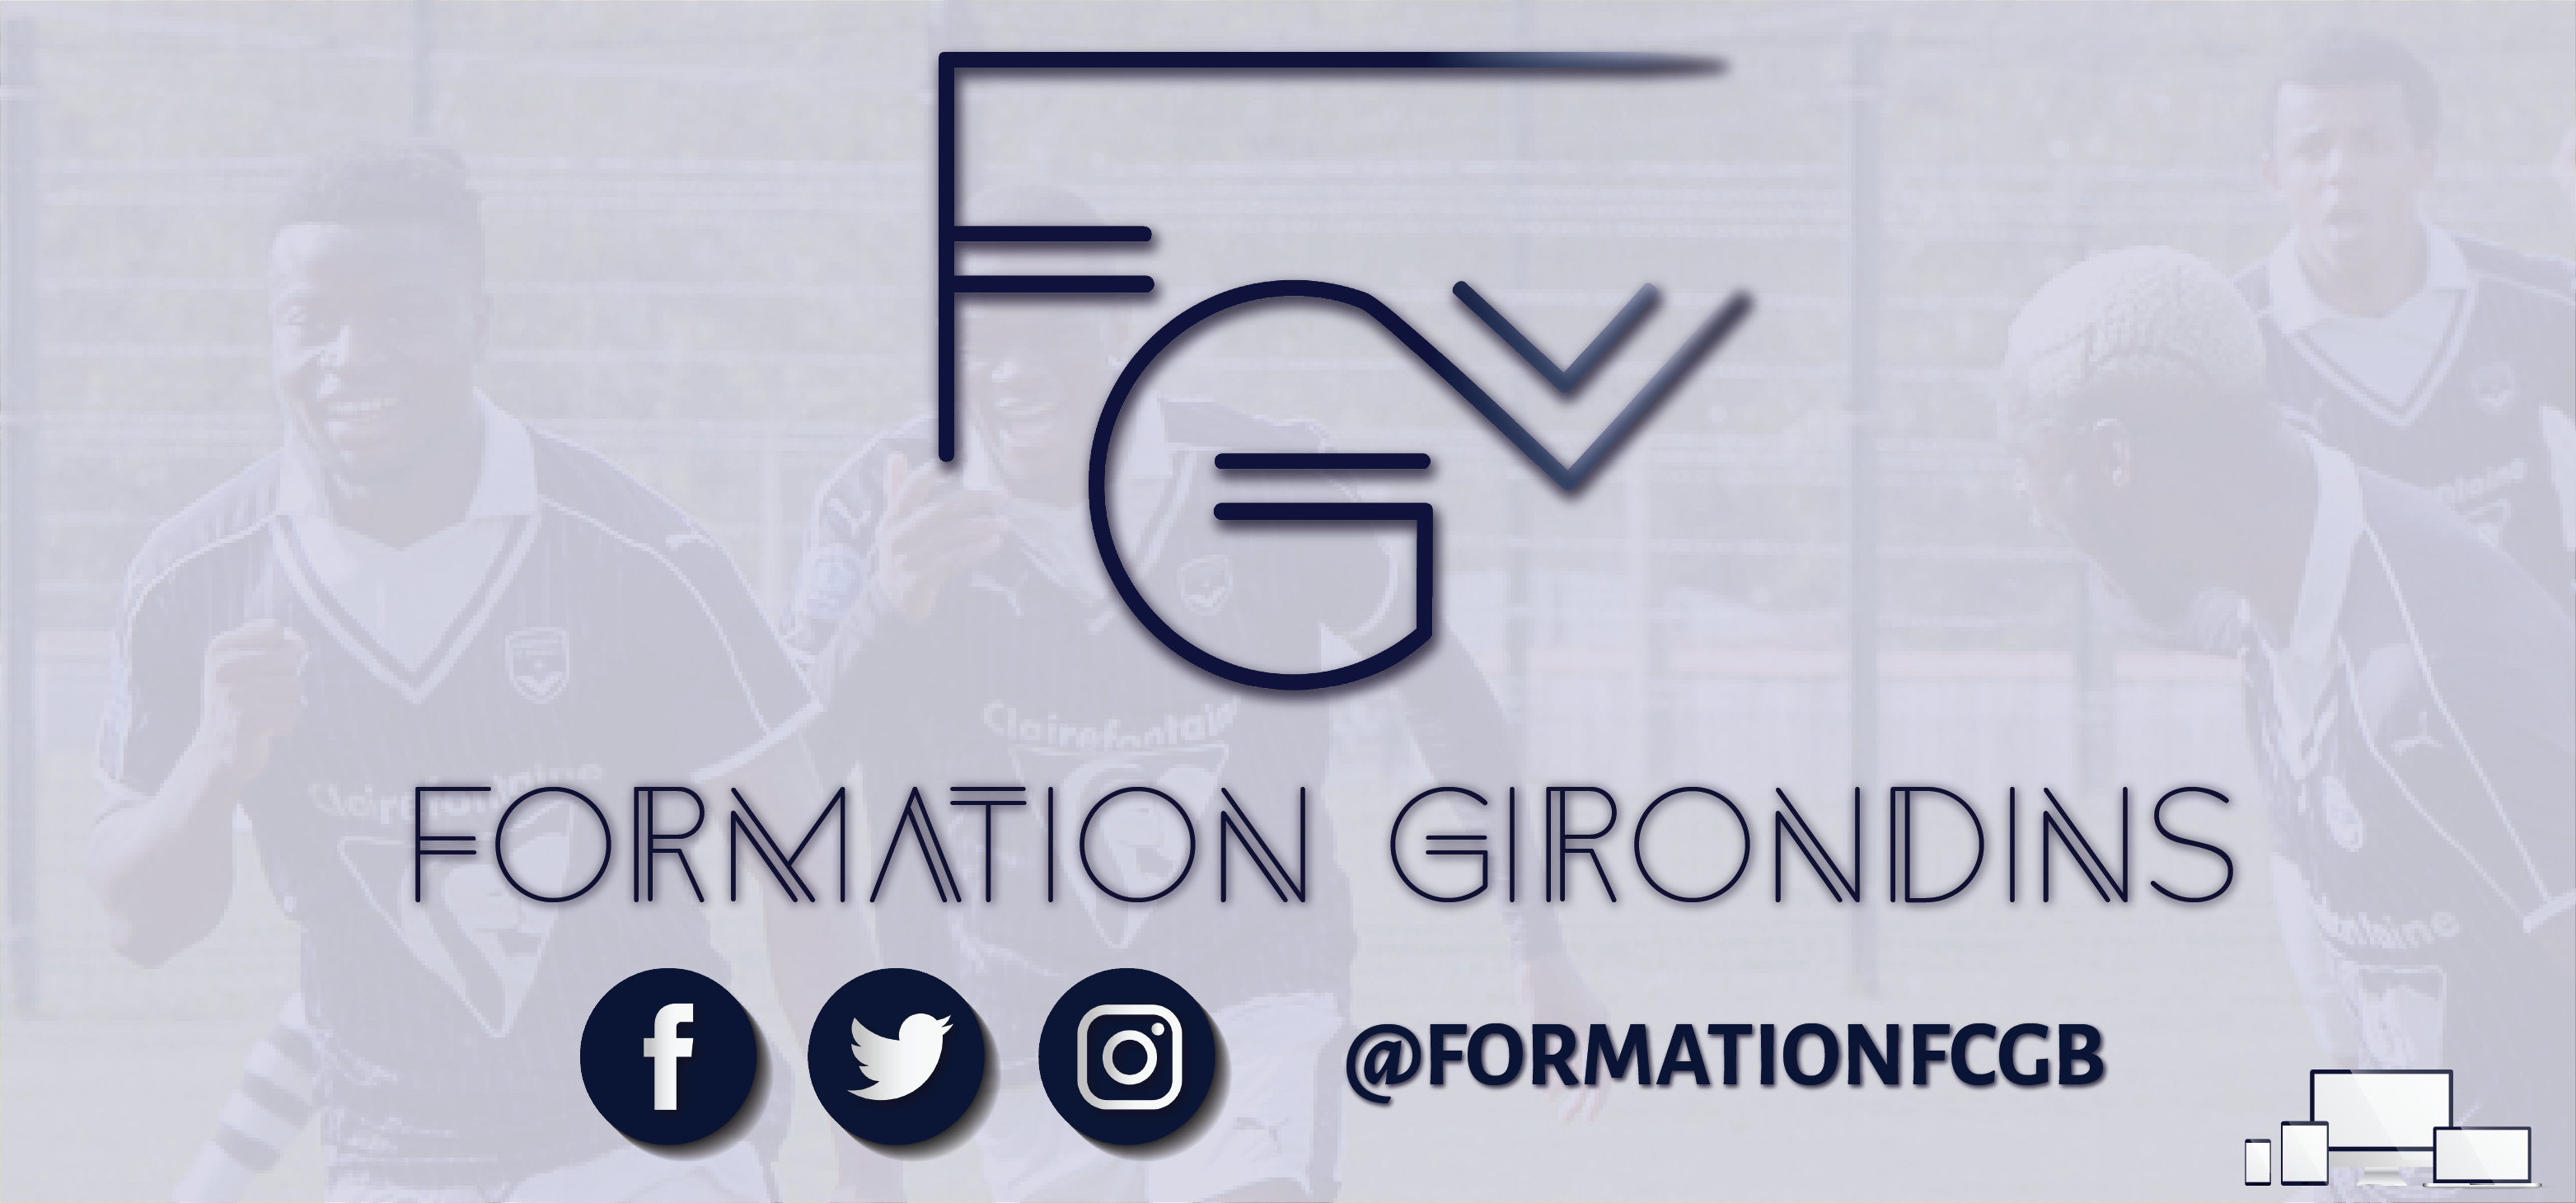 CfaGirondins devient Formation Girondins !